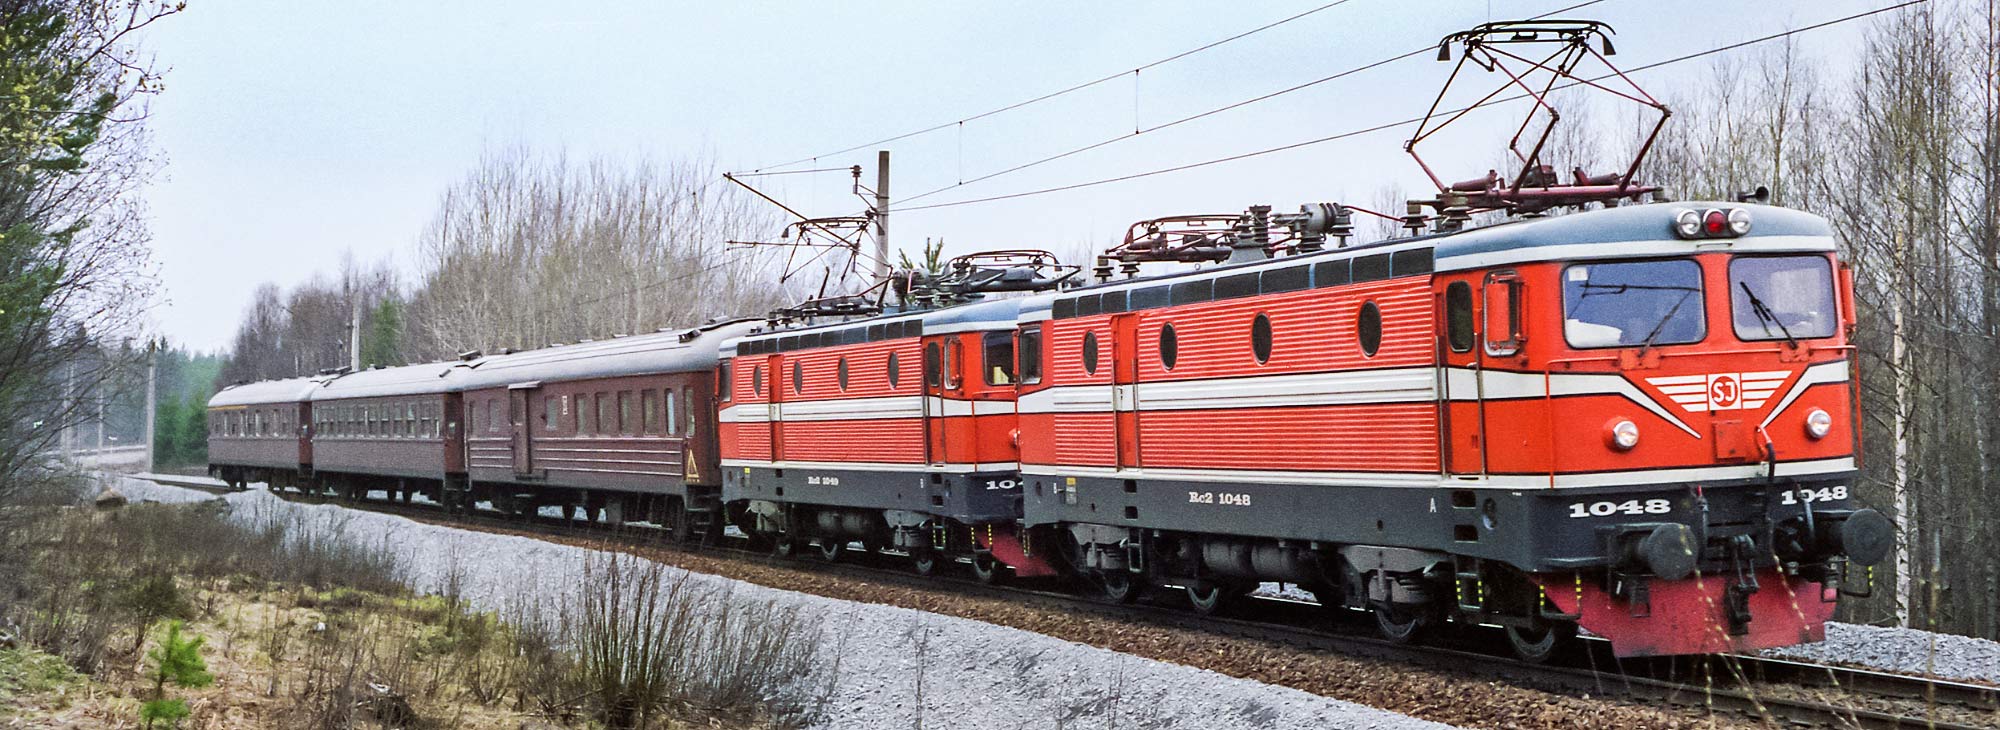 Rc2-lok med persontåg utanför Sandviken 1989